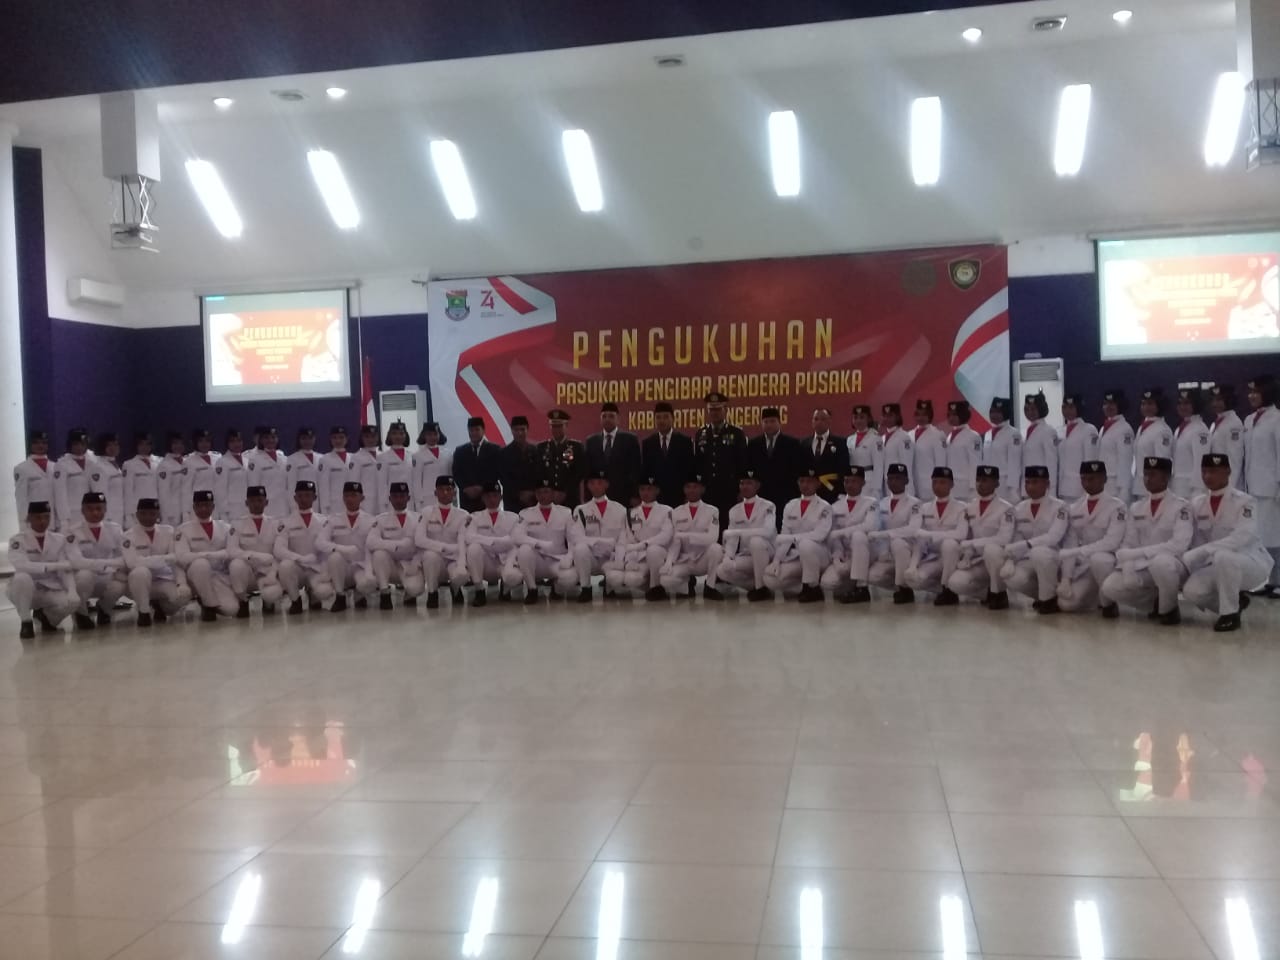 Pengukuhan pasukan pengibar bendera pusaka (Paskibraka) Kabupaten Tangerang.